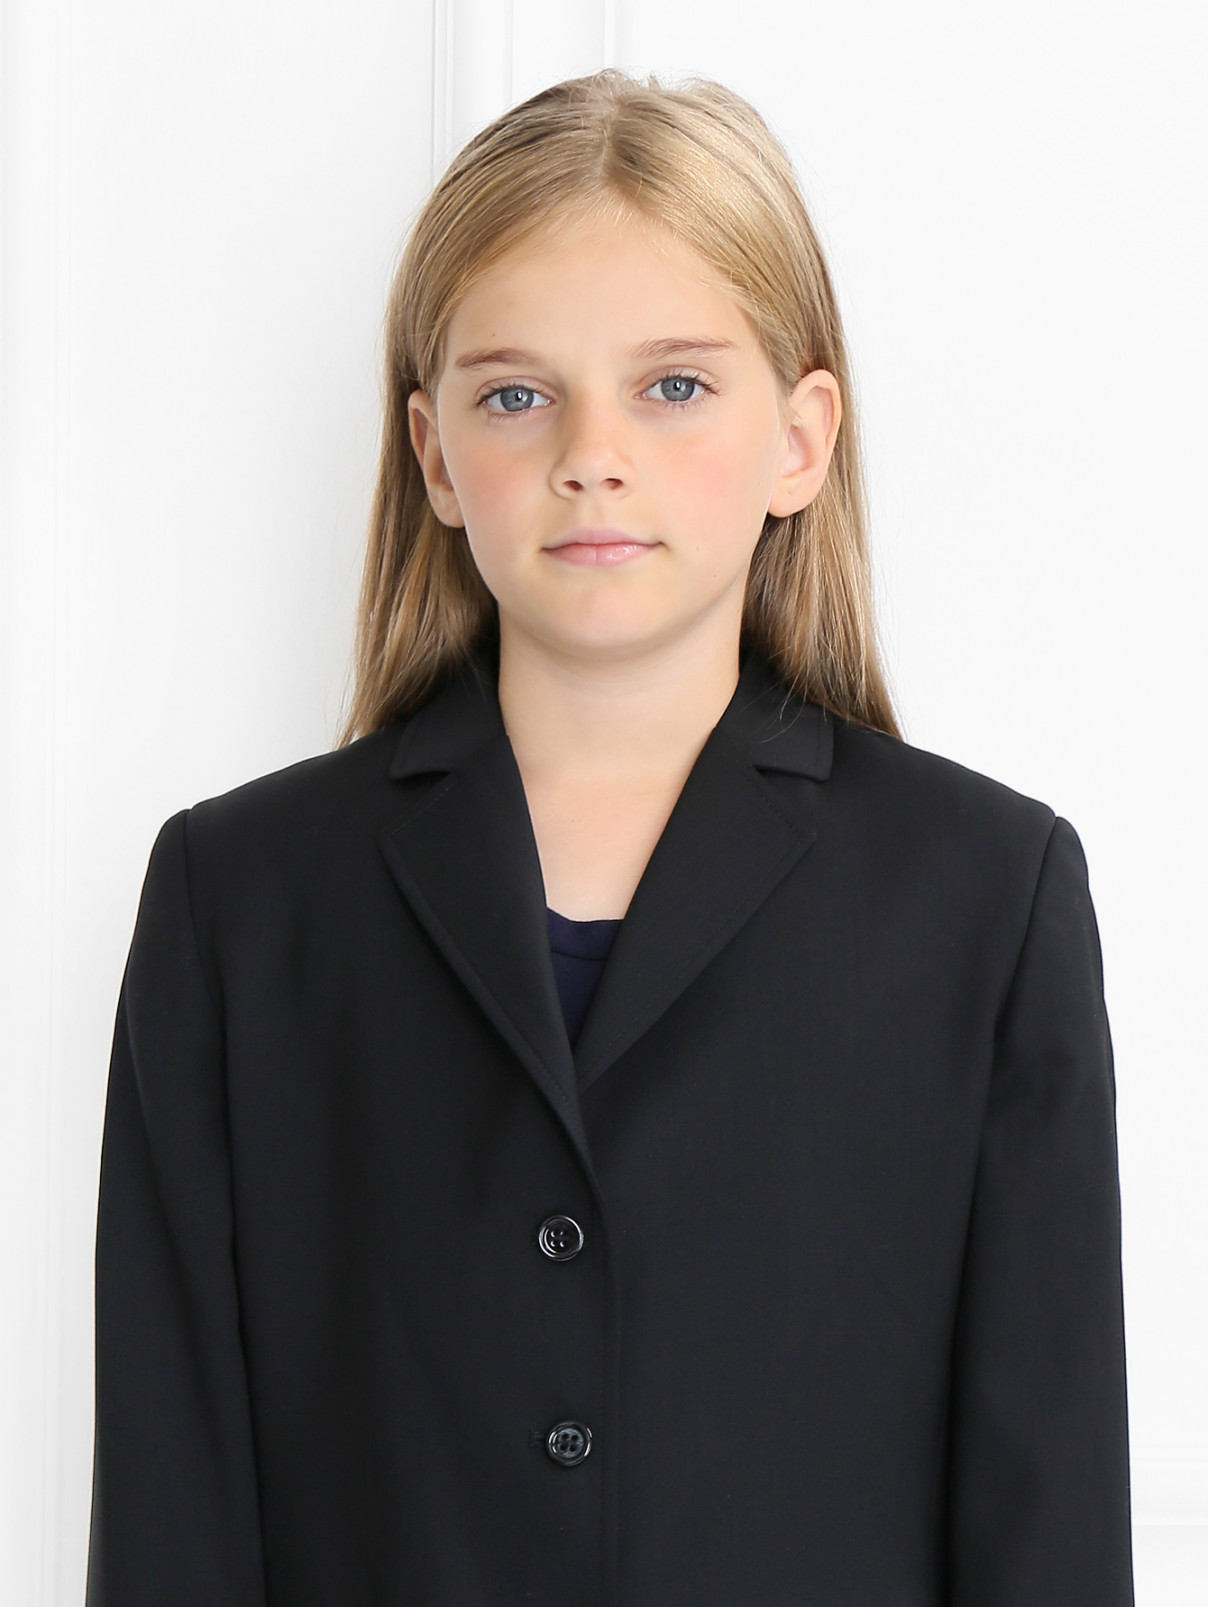 Жакет из шерсти классический Aletta Couture  –  Модель Общий вид1  – Цвет:  Черный